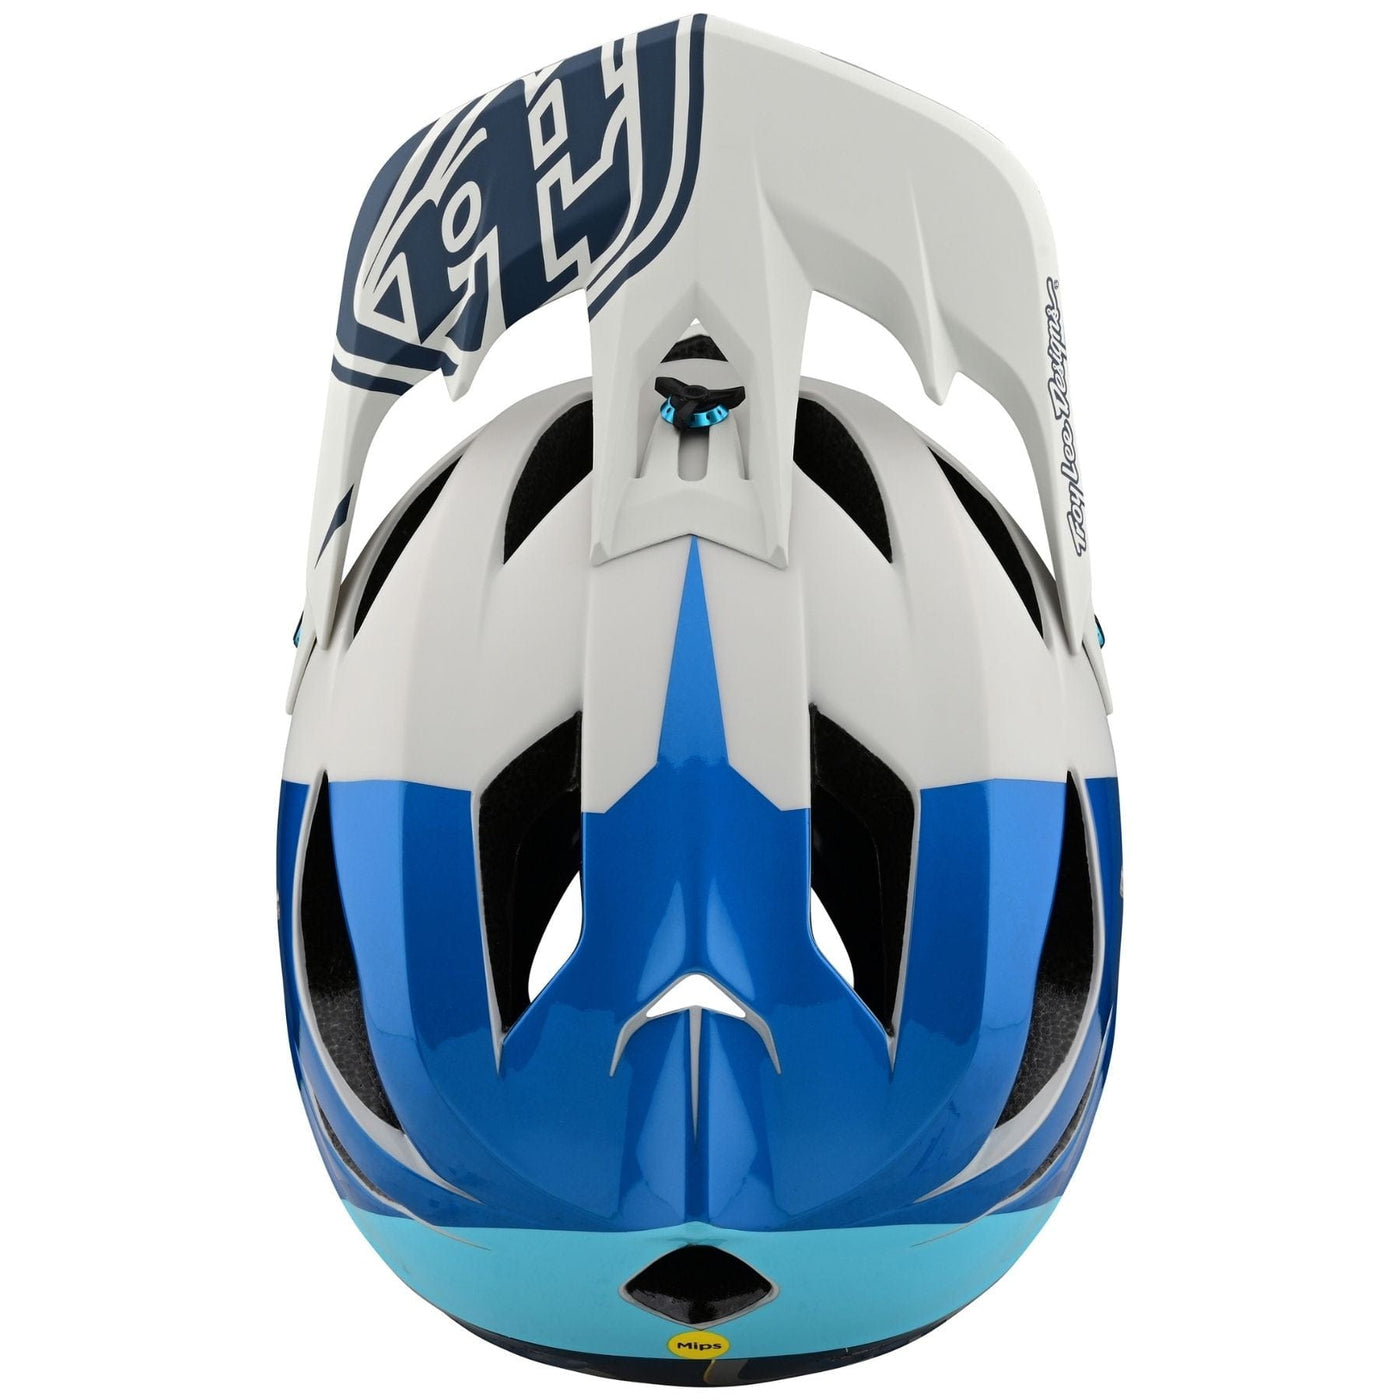 Troy Lee Designs STAGE MIPS Helmet Nova - Slate Blue